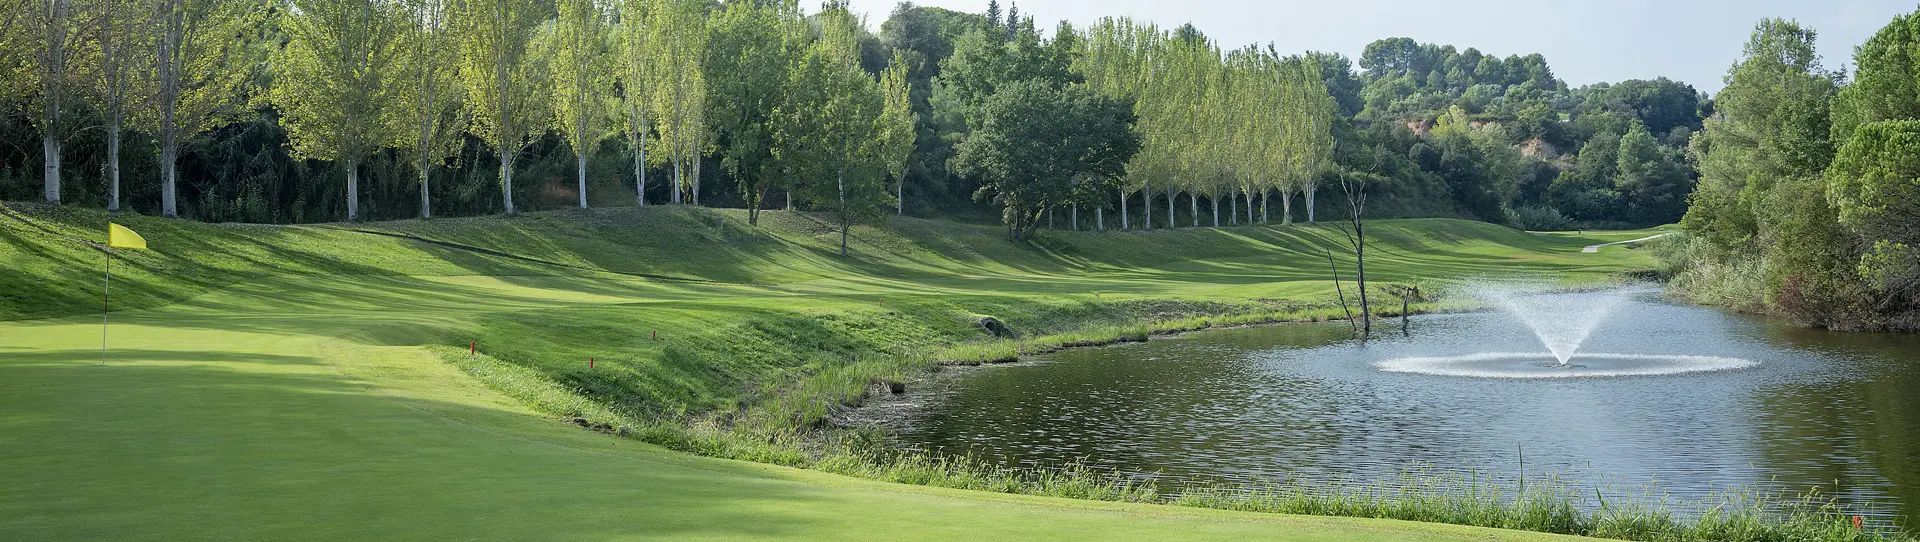 Spain golf courses - Club Golf Barcelona - Photo 2